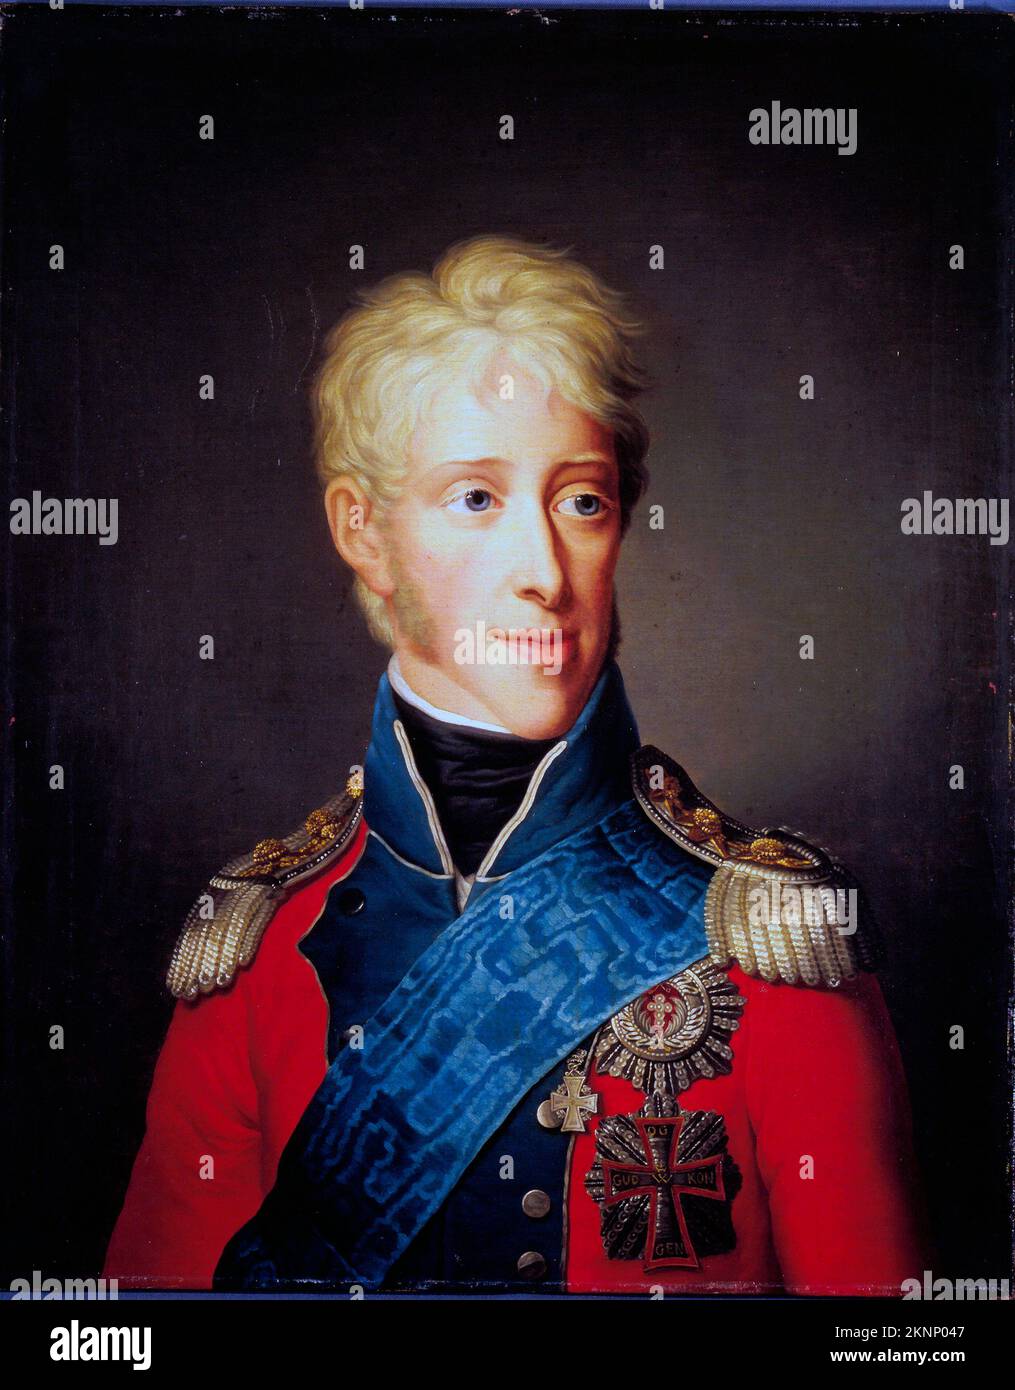 Frédéric VI du Danemark (1768 – 1839) Roi du Danemark de 1808 à 1839 et Roi de Norvège de 1808 à 1814, peinture par Friedrich Carl Gröger Banque D'Images